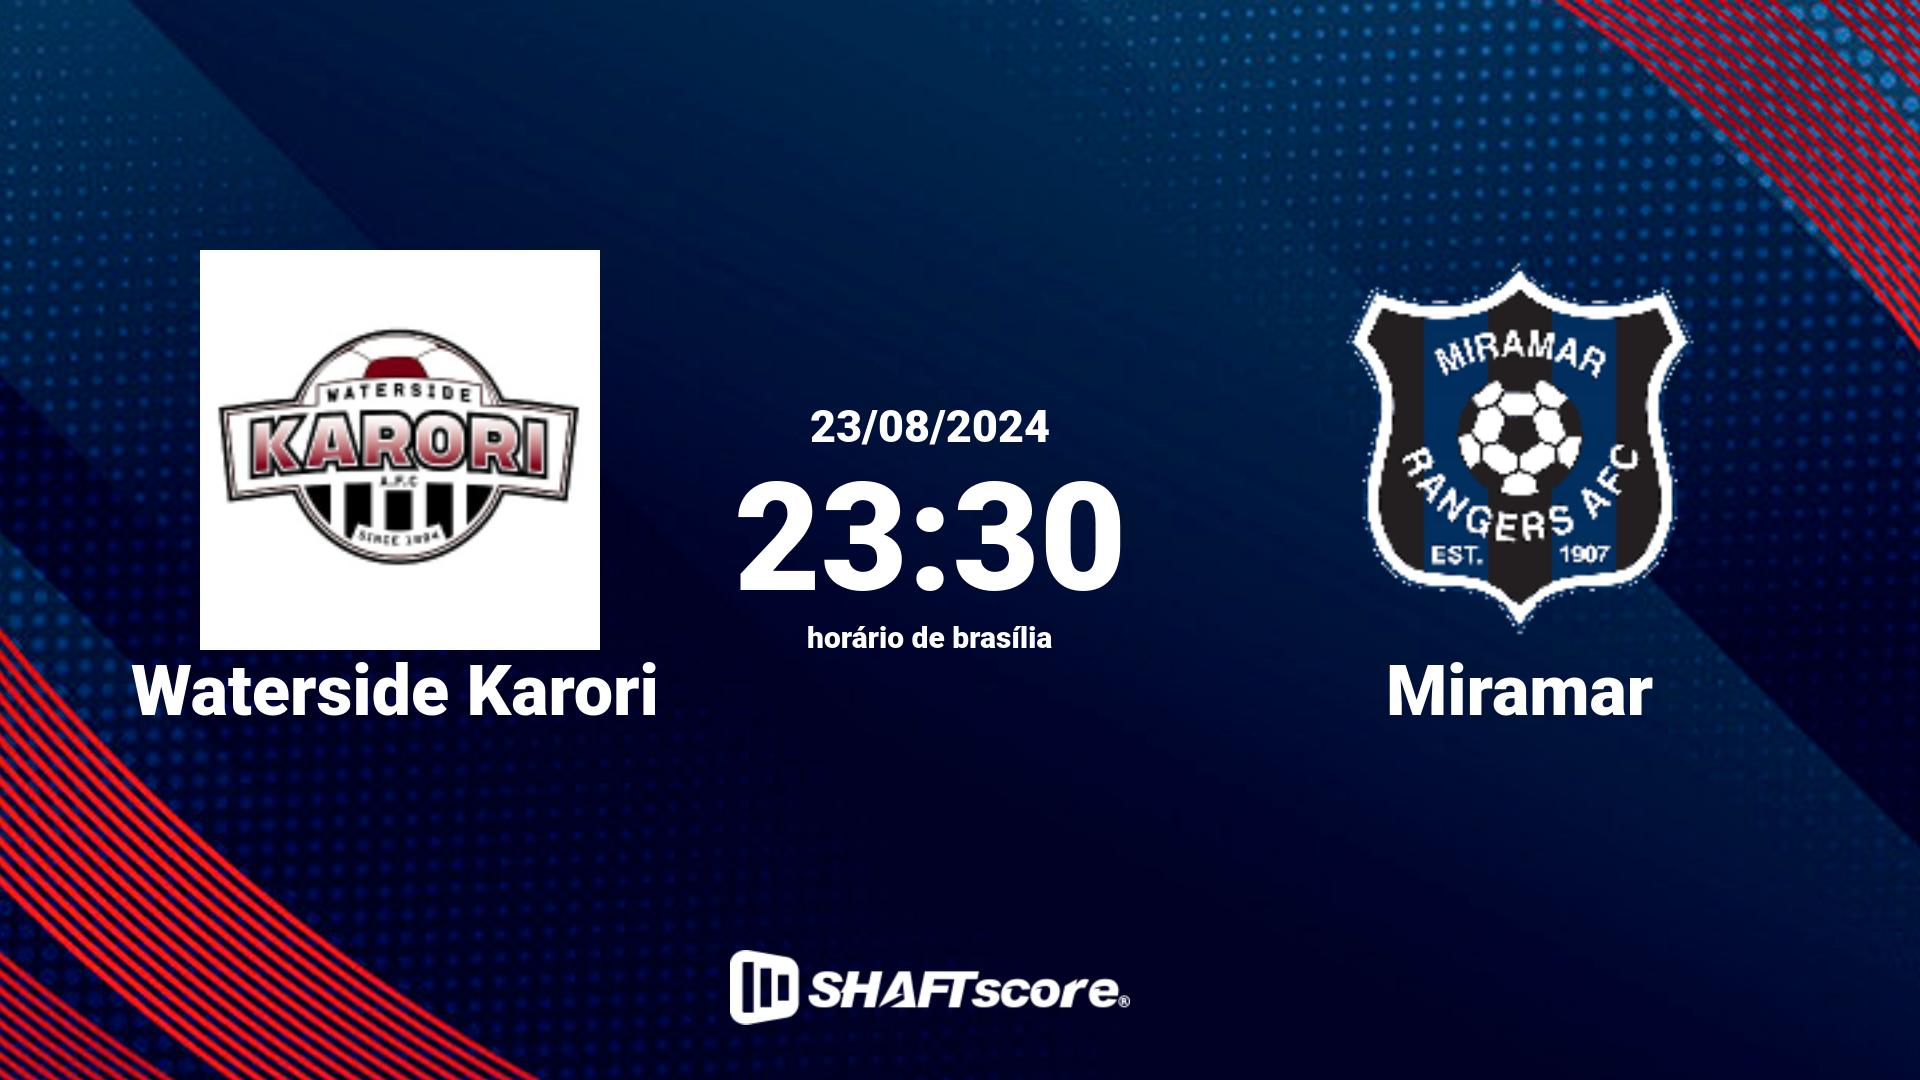 Estatísticas do jogo Waterside Karori vs Miramar 23.08 23:30